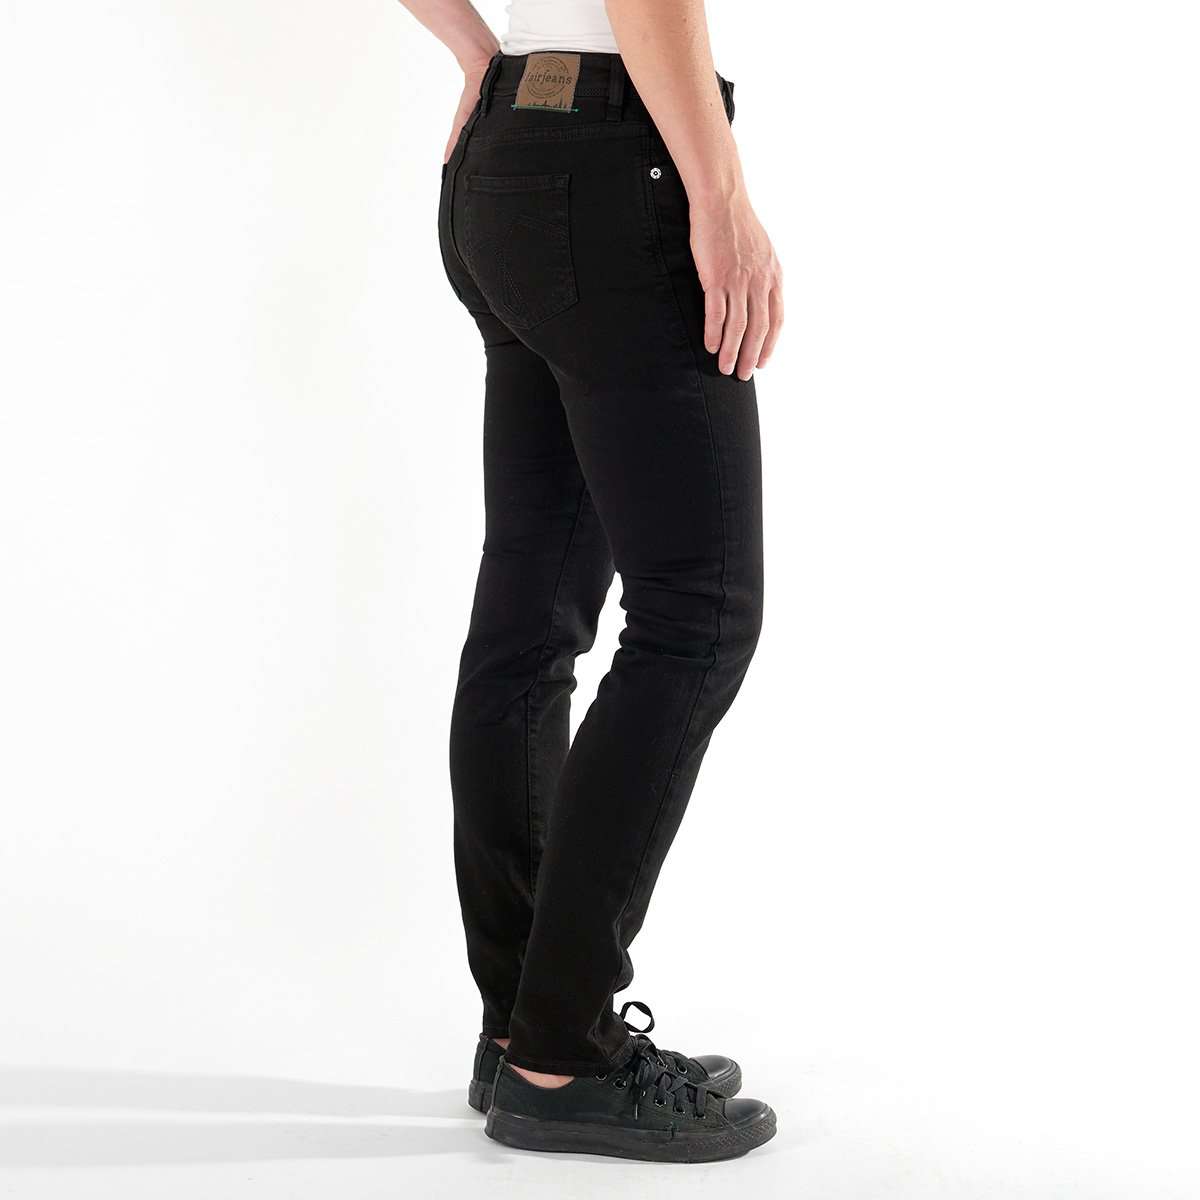 Ein Produktfoto der fairjeans Damenjeans in schwarz. Schmaler Slim-Fit-Schnitt aus Bio-Baumwolle für einen umweltbewussten und zeitlosen Look. Perfekt für jeden Anlass.